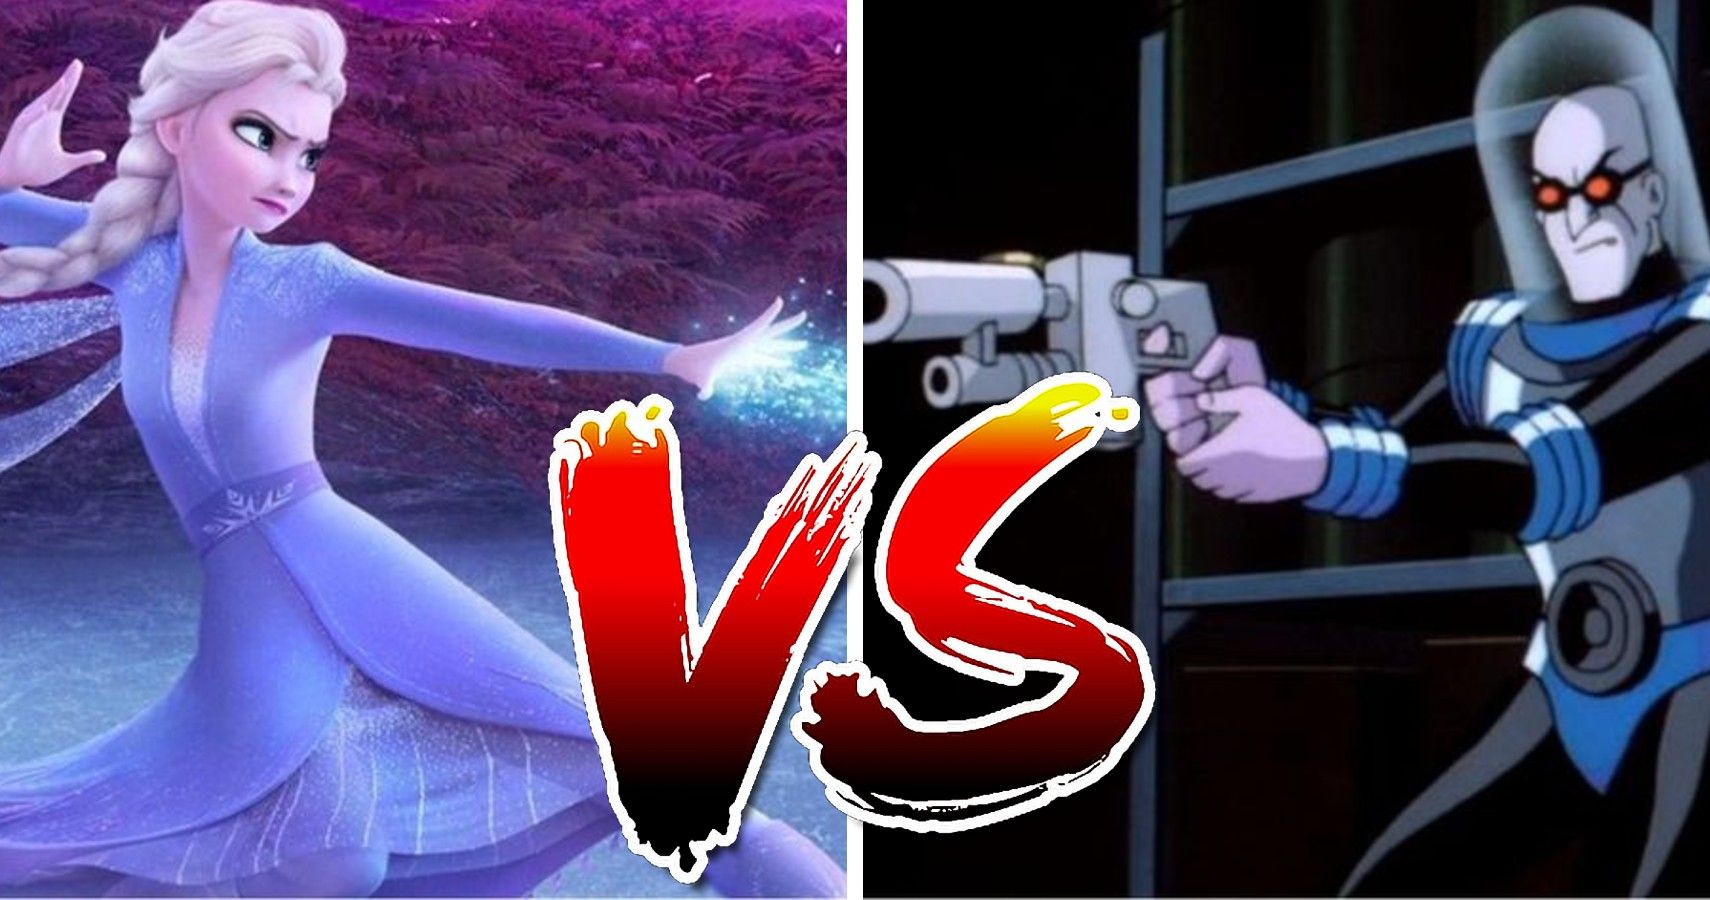 queen-elsa-vs-mr-freeze-who-would-win-cbr